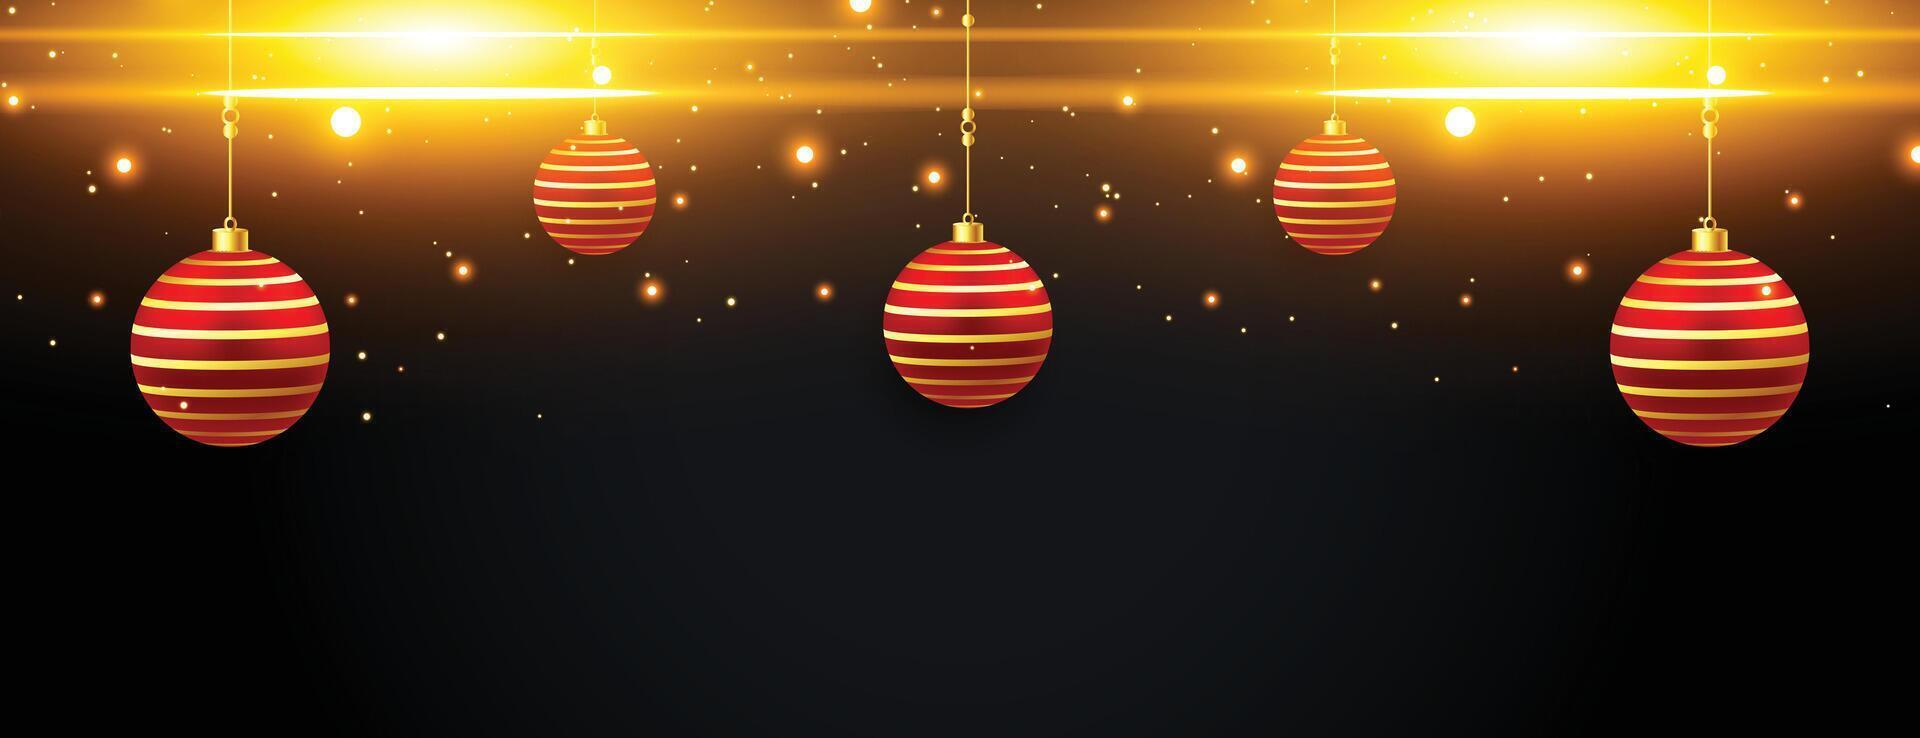 alegre Navidad destellos bandera con rojo dorado pelotas vector